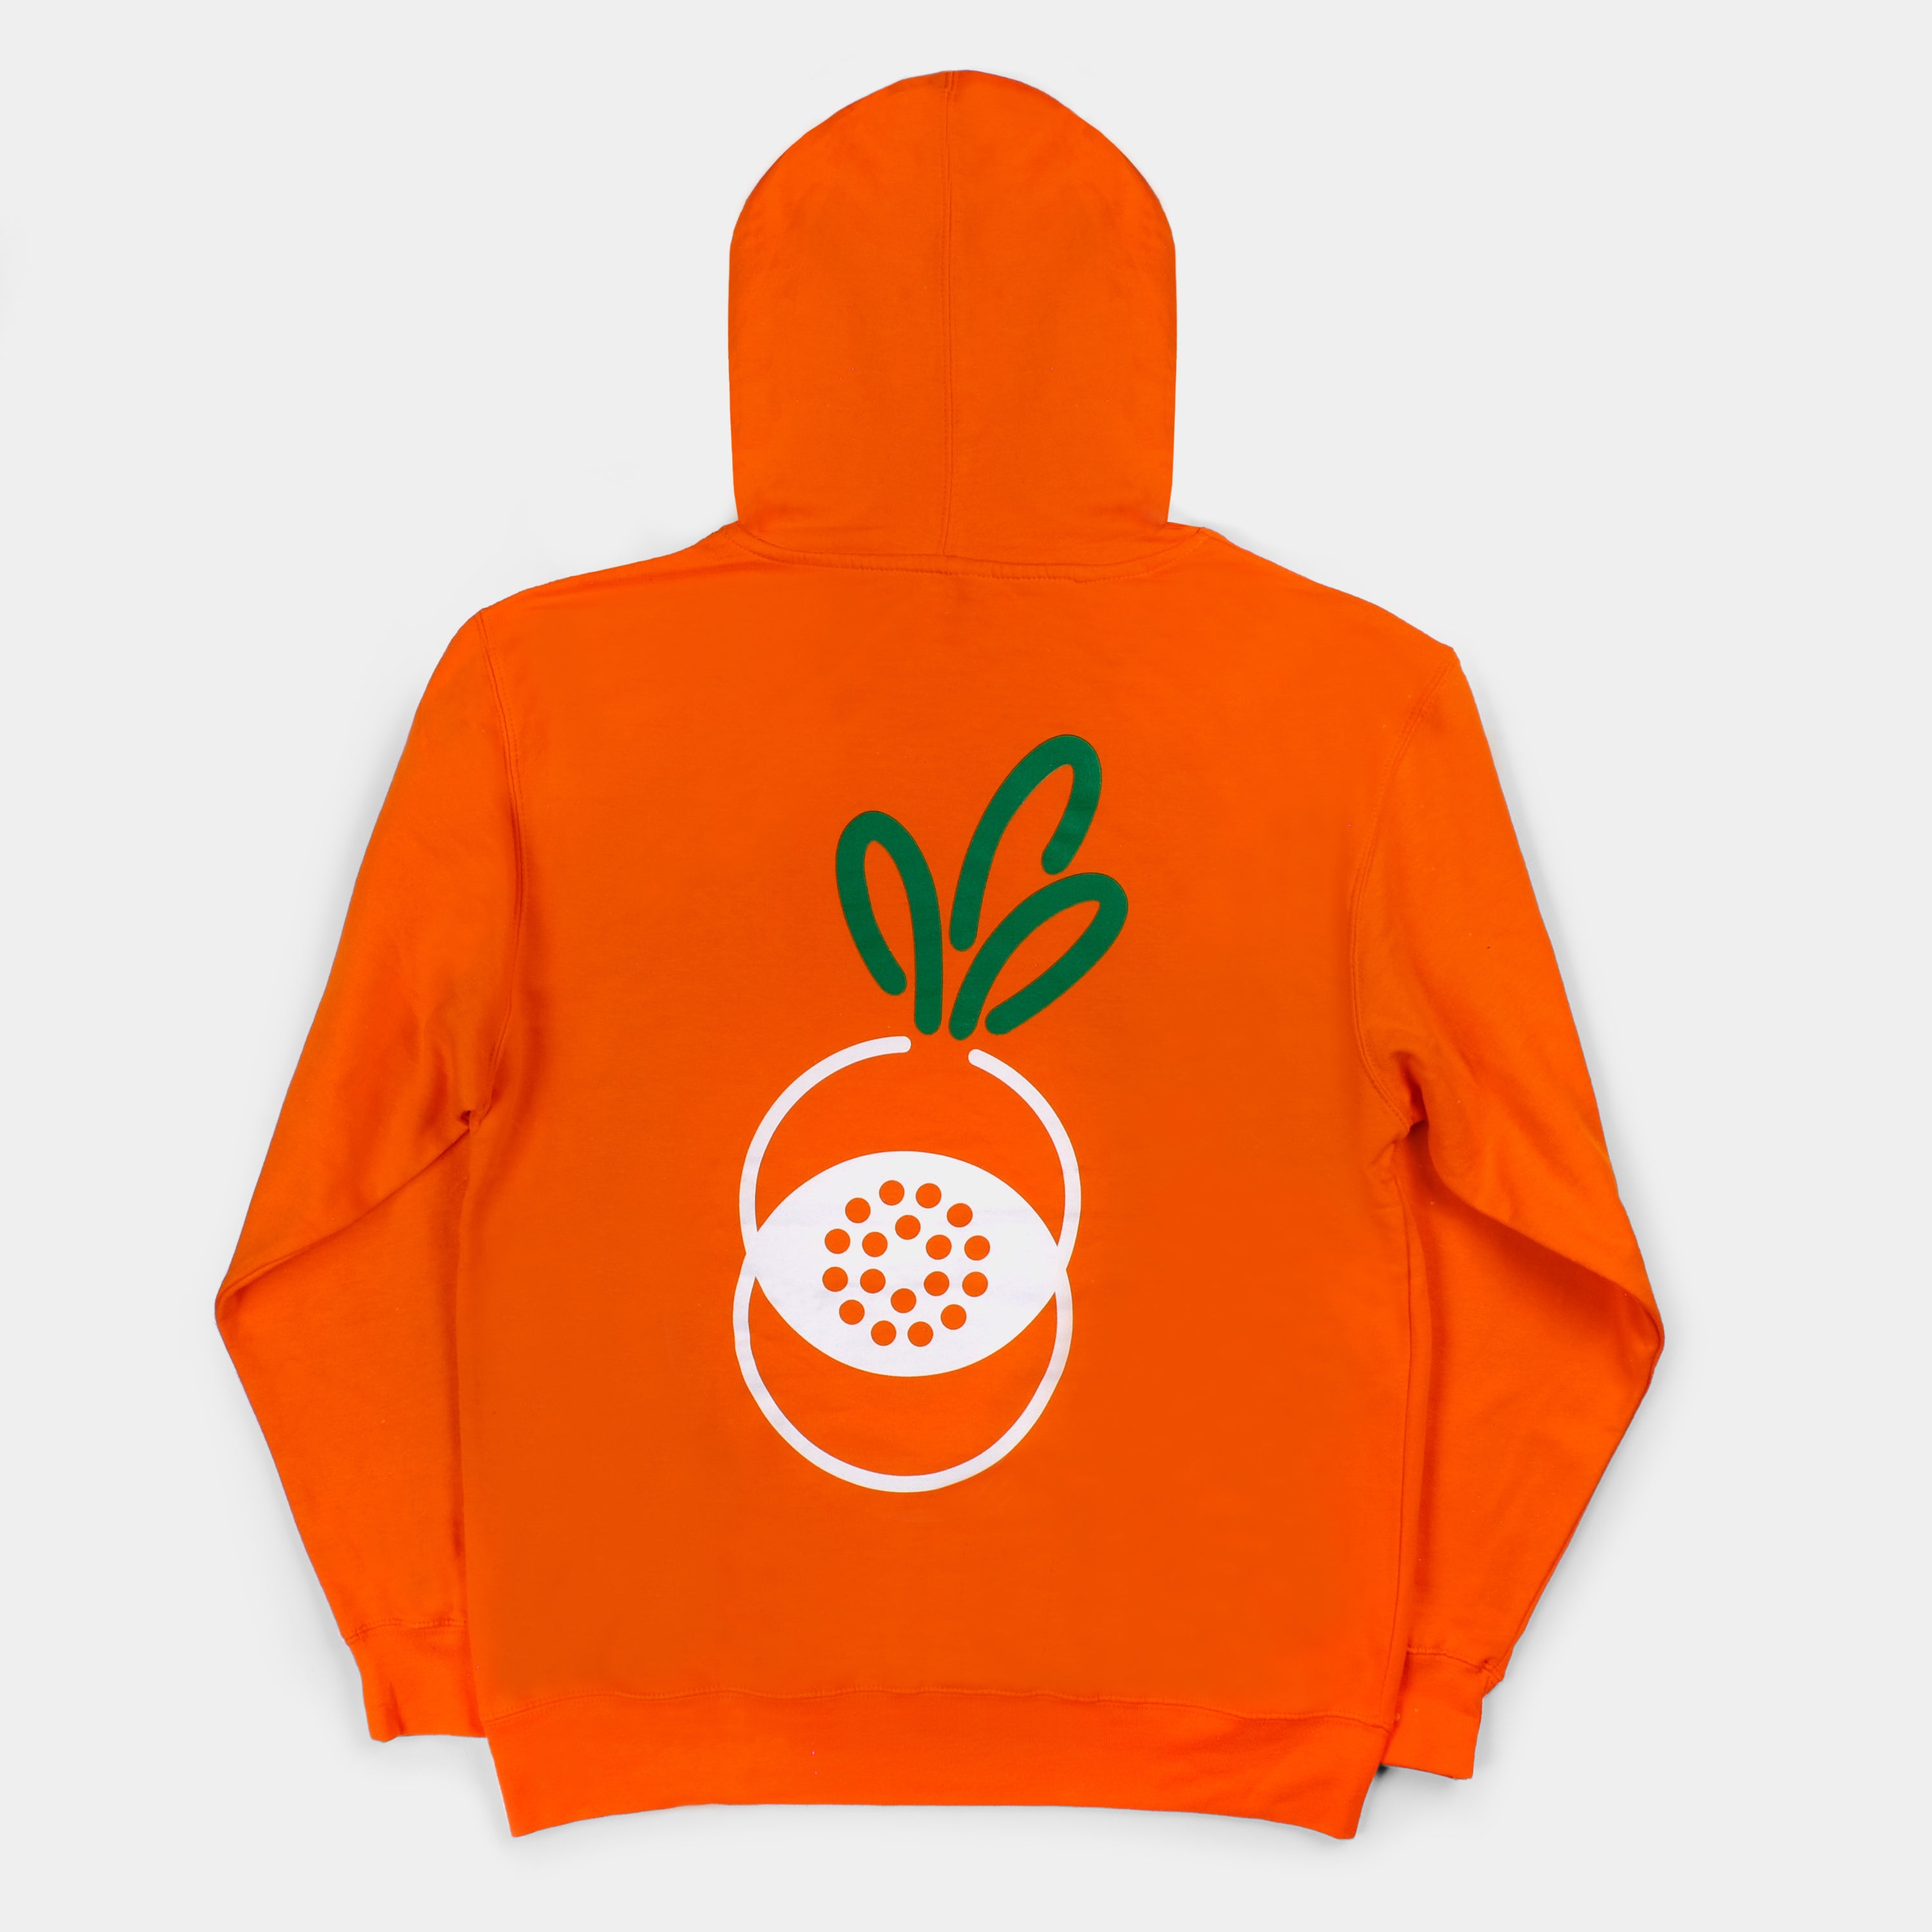 Carrots x Retrospekt Orange Hoodie Sweatshirt